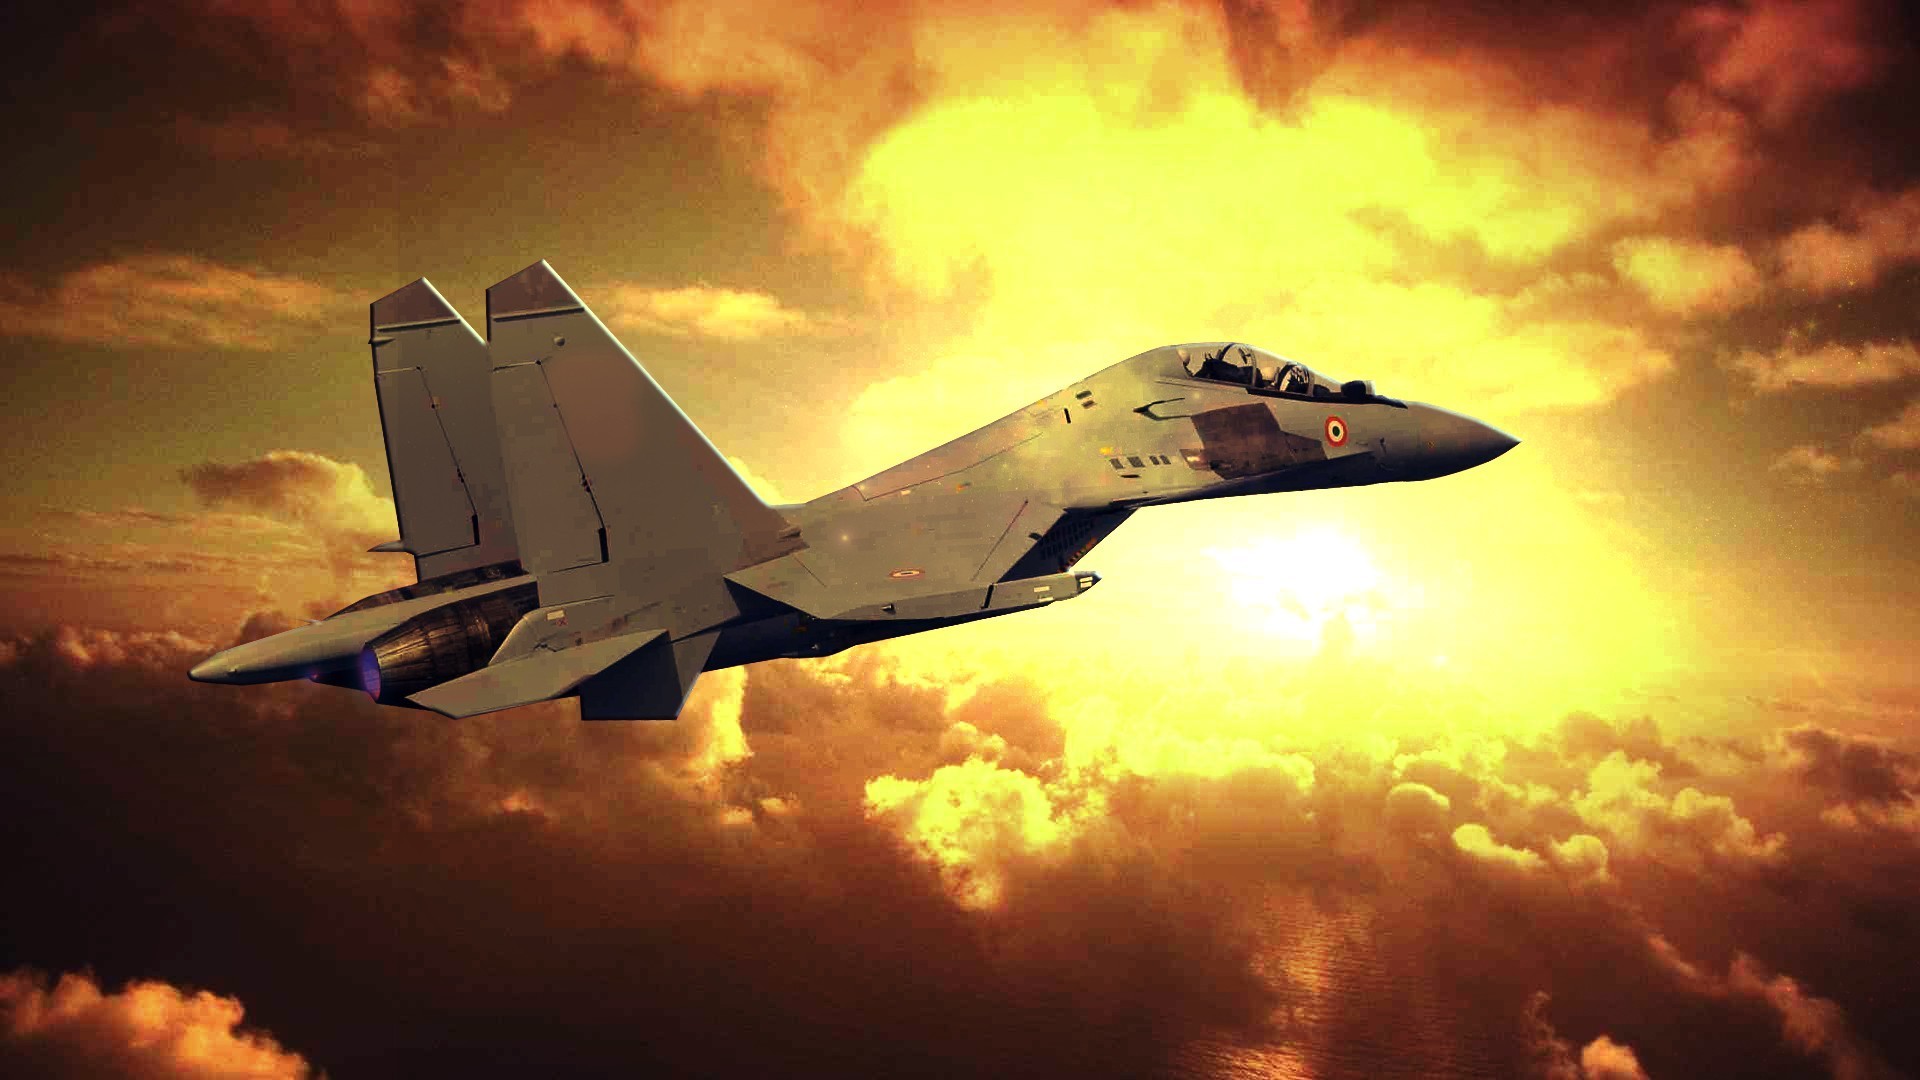 fondo de pantalla flugzeug,avión,aeronave,fuerza aerea,aeronave militar,avión de combate